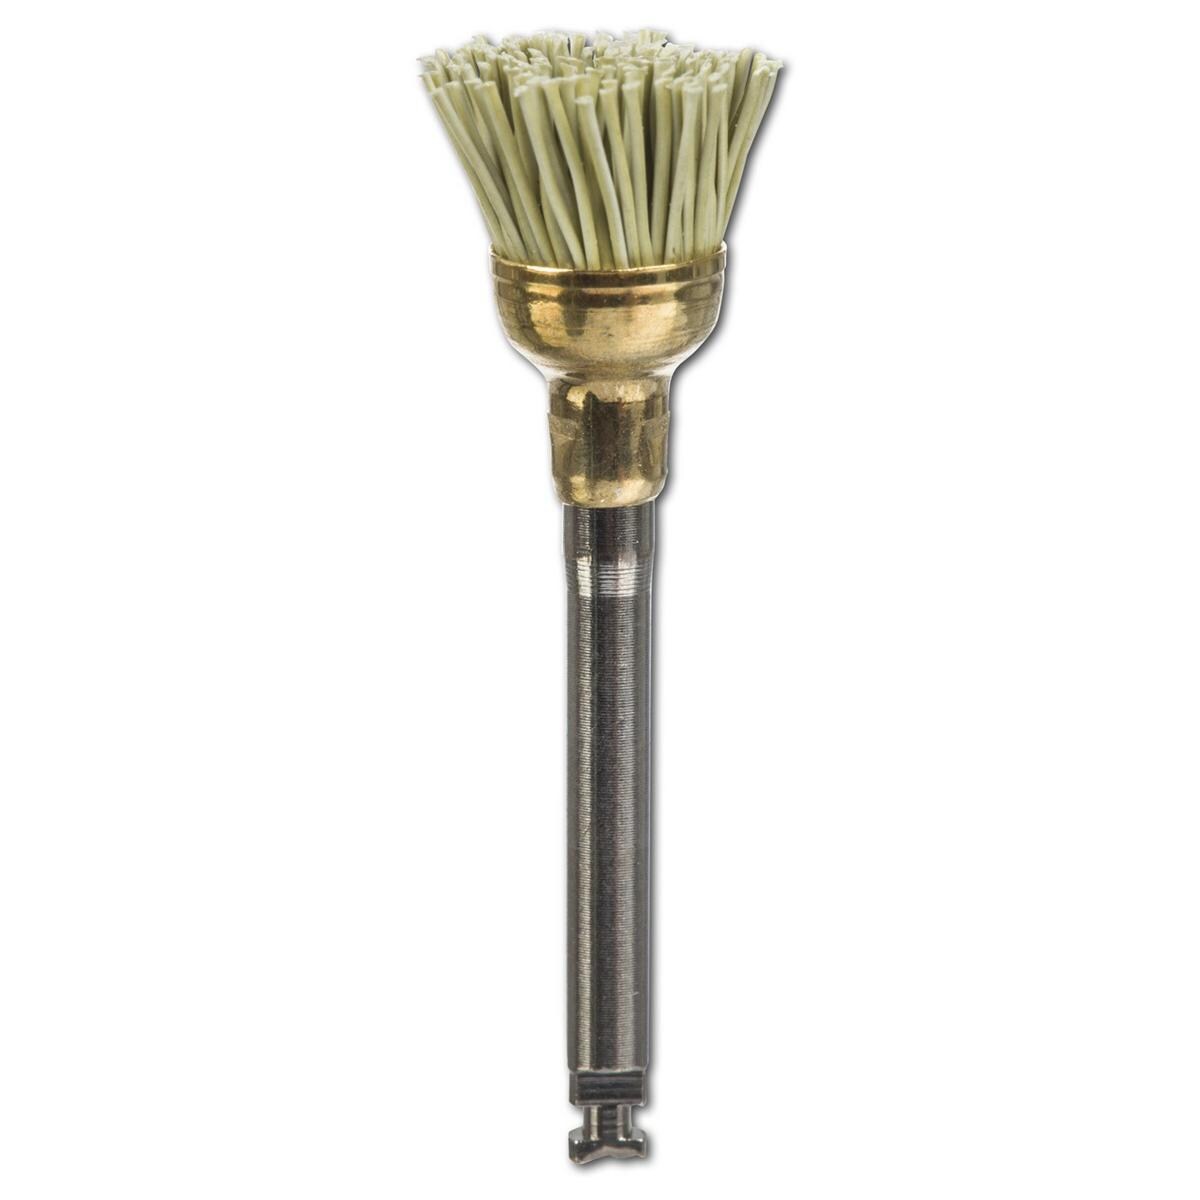 Jiffy Composite Brush - Regular brush, #850